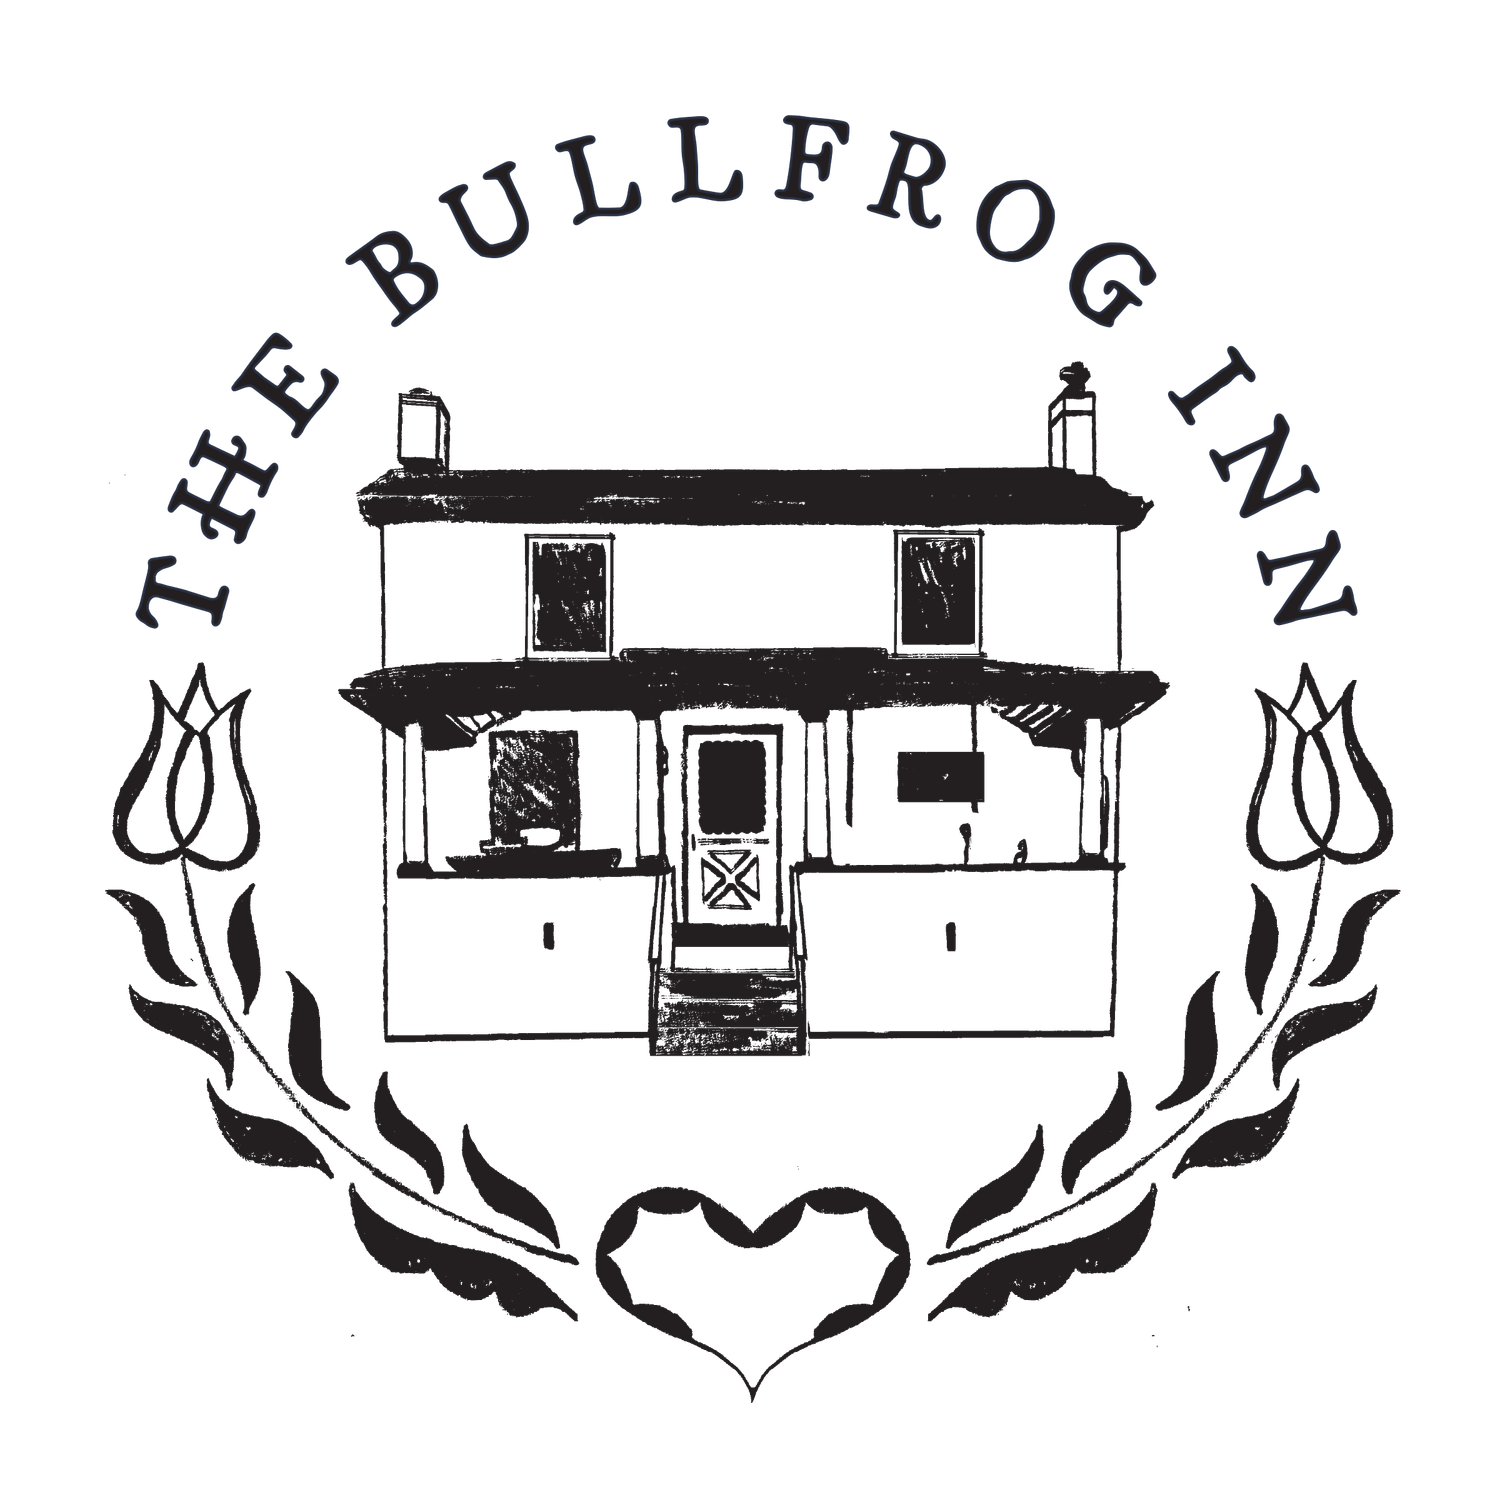 The Bullfrog Inn